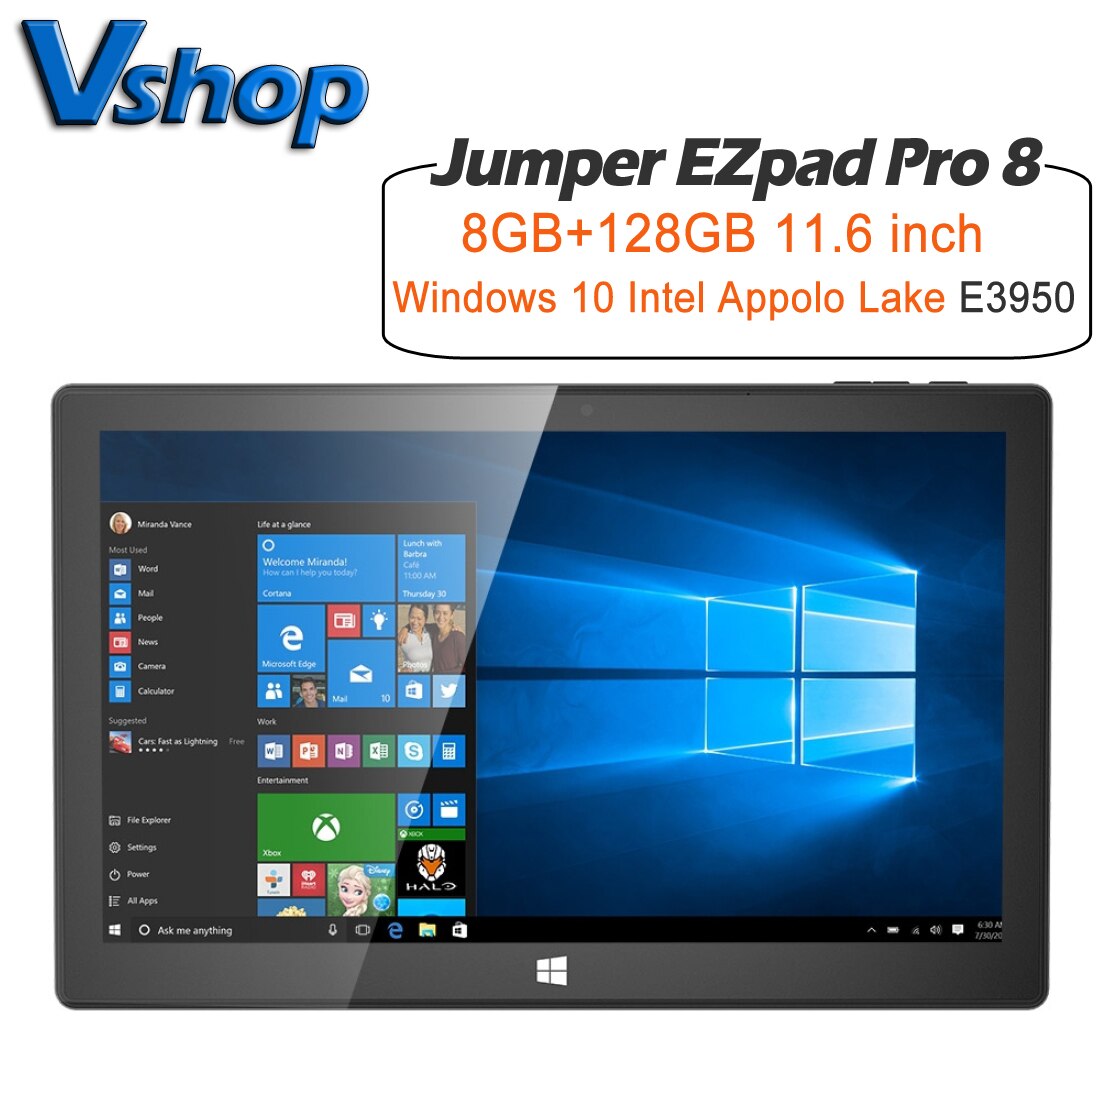  EZpad Pro 8 º PC 11.6 &8GB RAM /12GB RAM 128GB ROM Windows 10 Intel Atom E3950  TF ī Bluetooth   WiFi